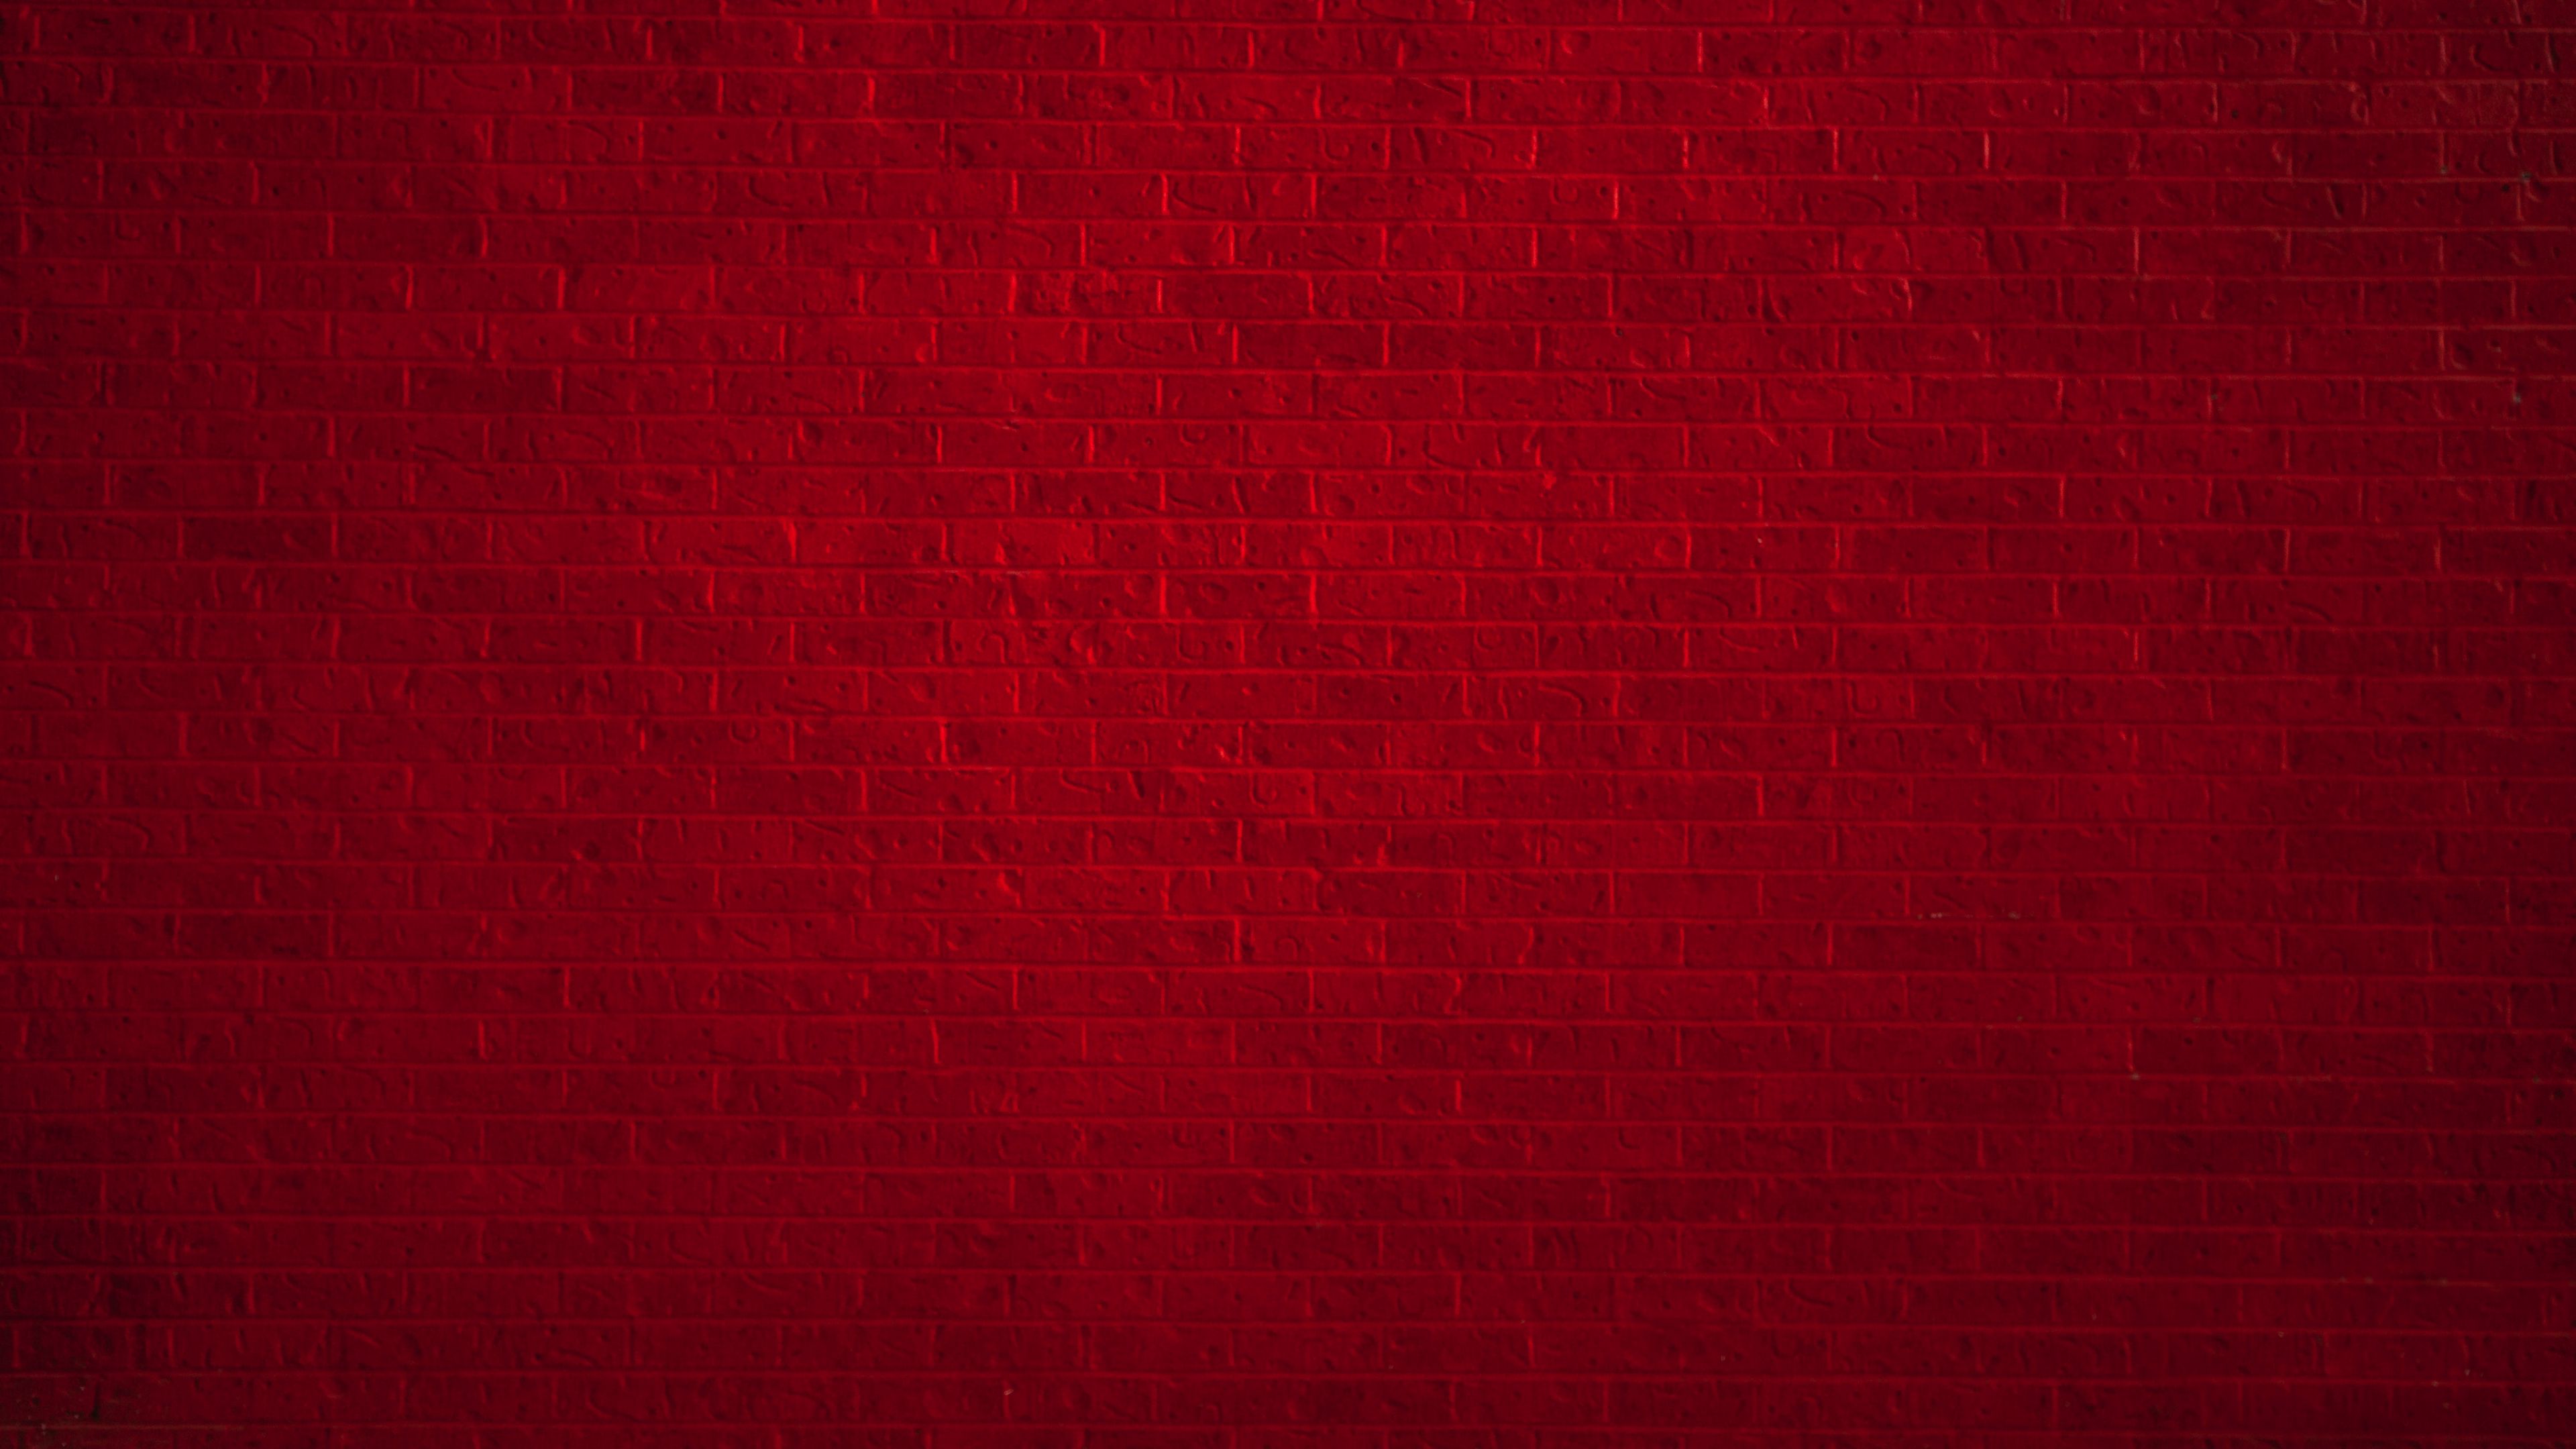 Hình nền tường gạch màu đỏ độ phân giải 4K là lựa chọn hoàn hảo cho những người yêu thích phong cách trang trí tối giản và hiện đại. Với màu đỏ rực rỡ và chi tiết tường gạch tuyệt đẹp, hình nền này sẽ khiến cho màn hình của bạn trở nên sống động và hấp dẫn. Hãy truy cập vào hình ảnh liên quan để tận hưởng trải nghiệm này!